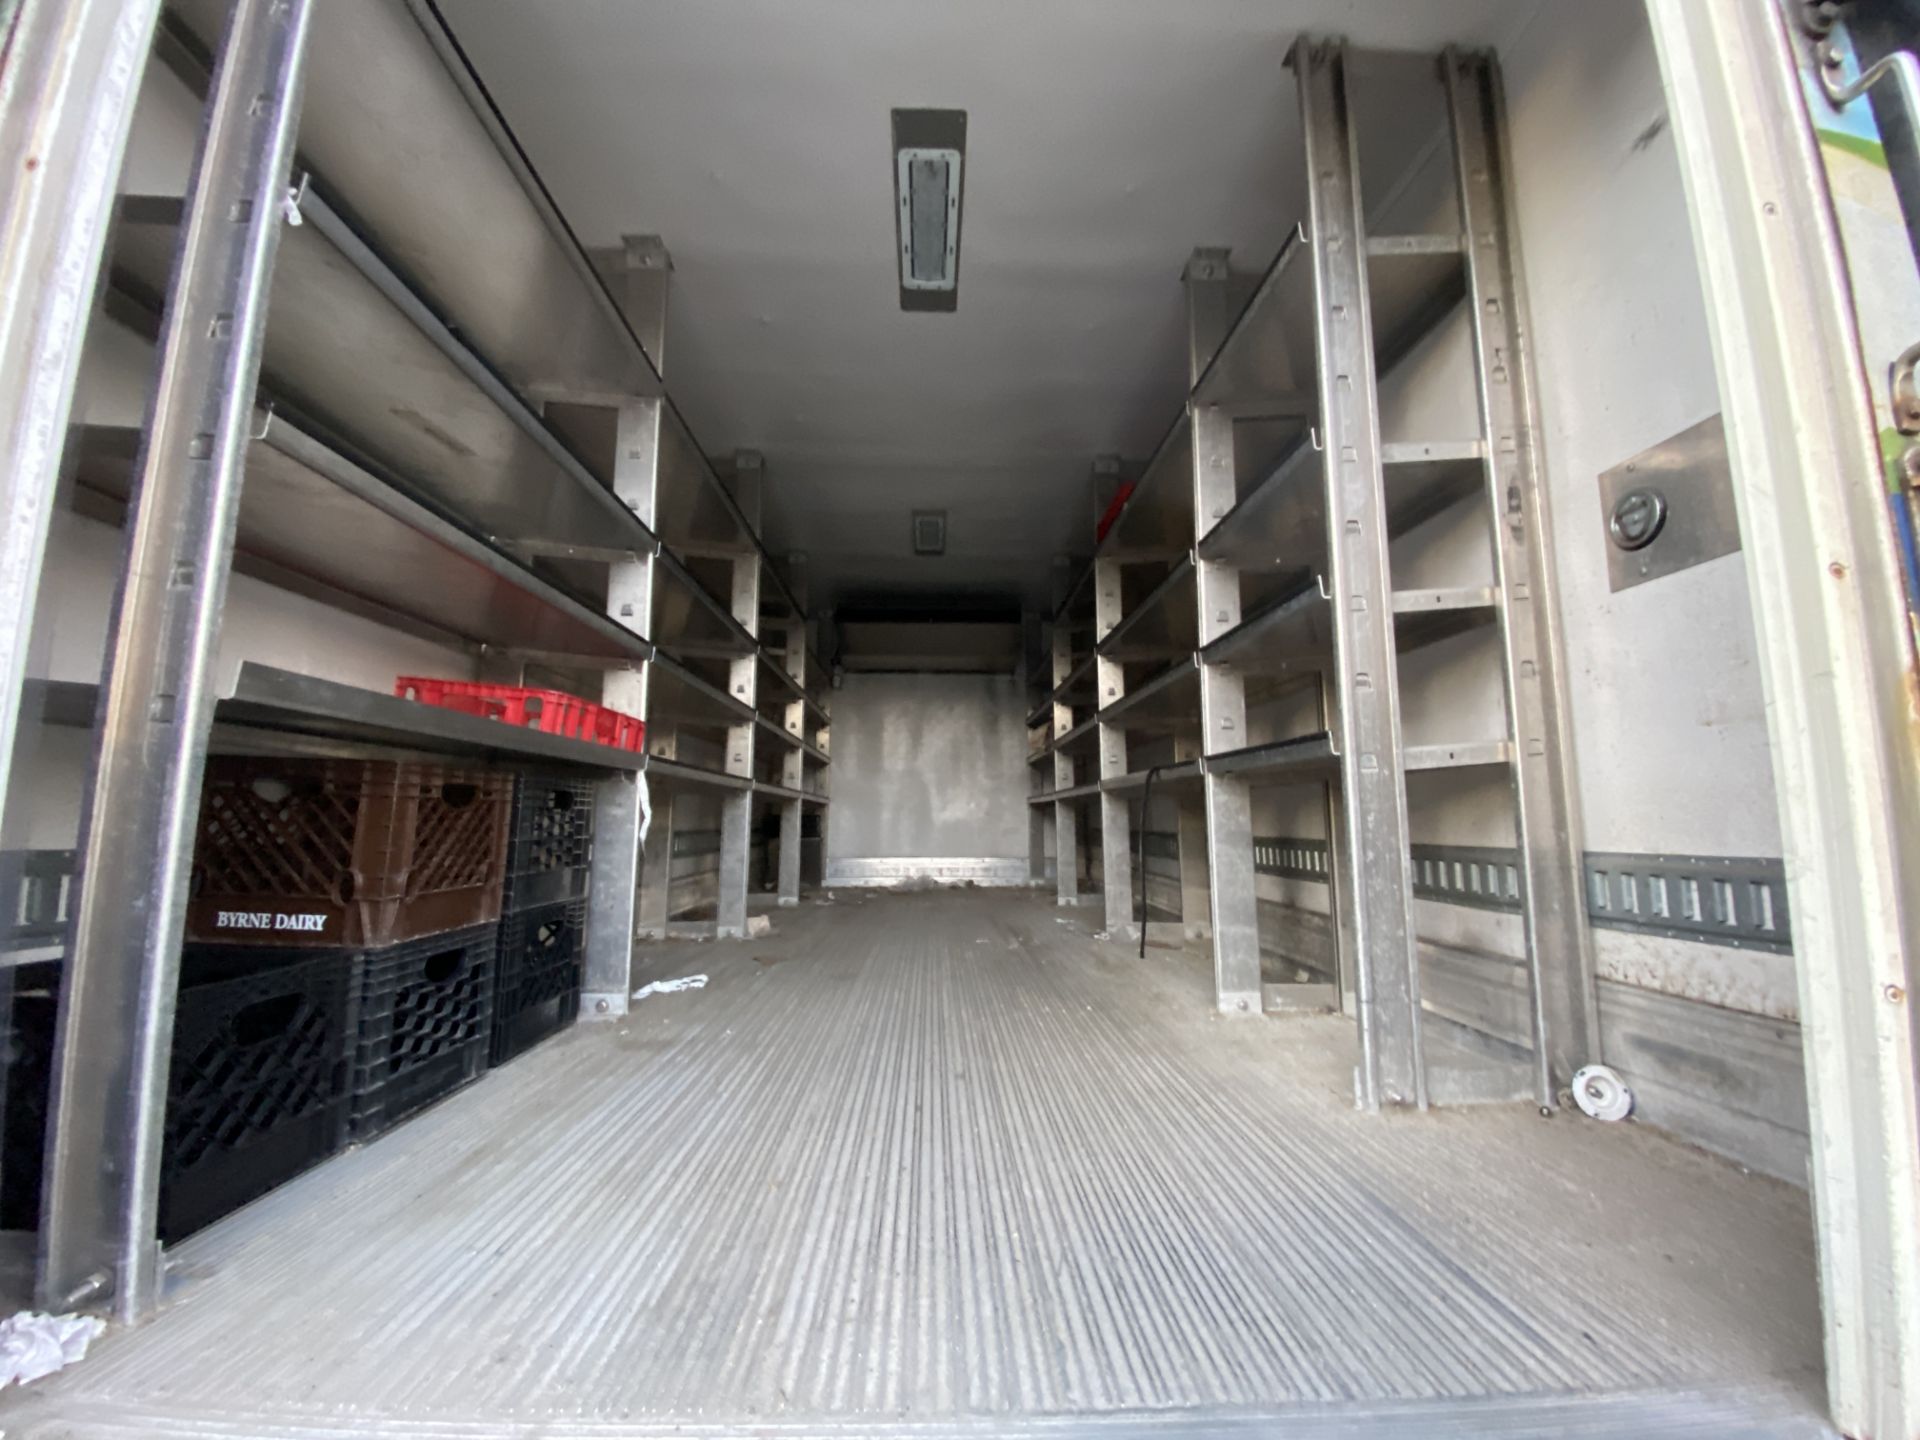 2013 Isuzu refrigerated truck - Image 6 of 9